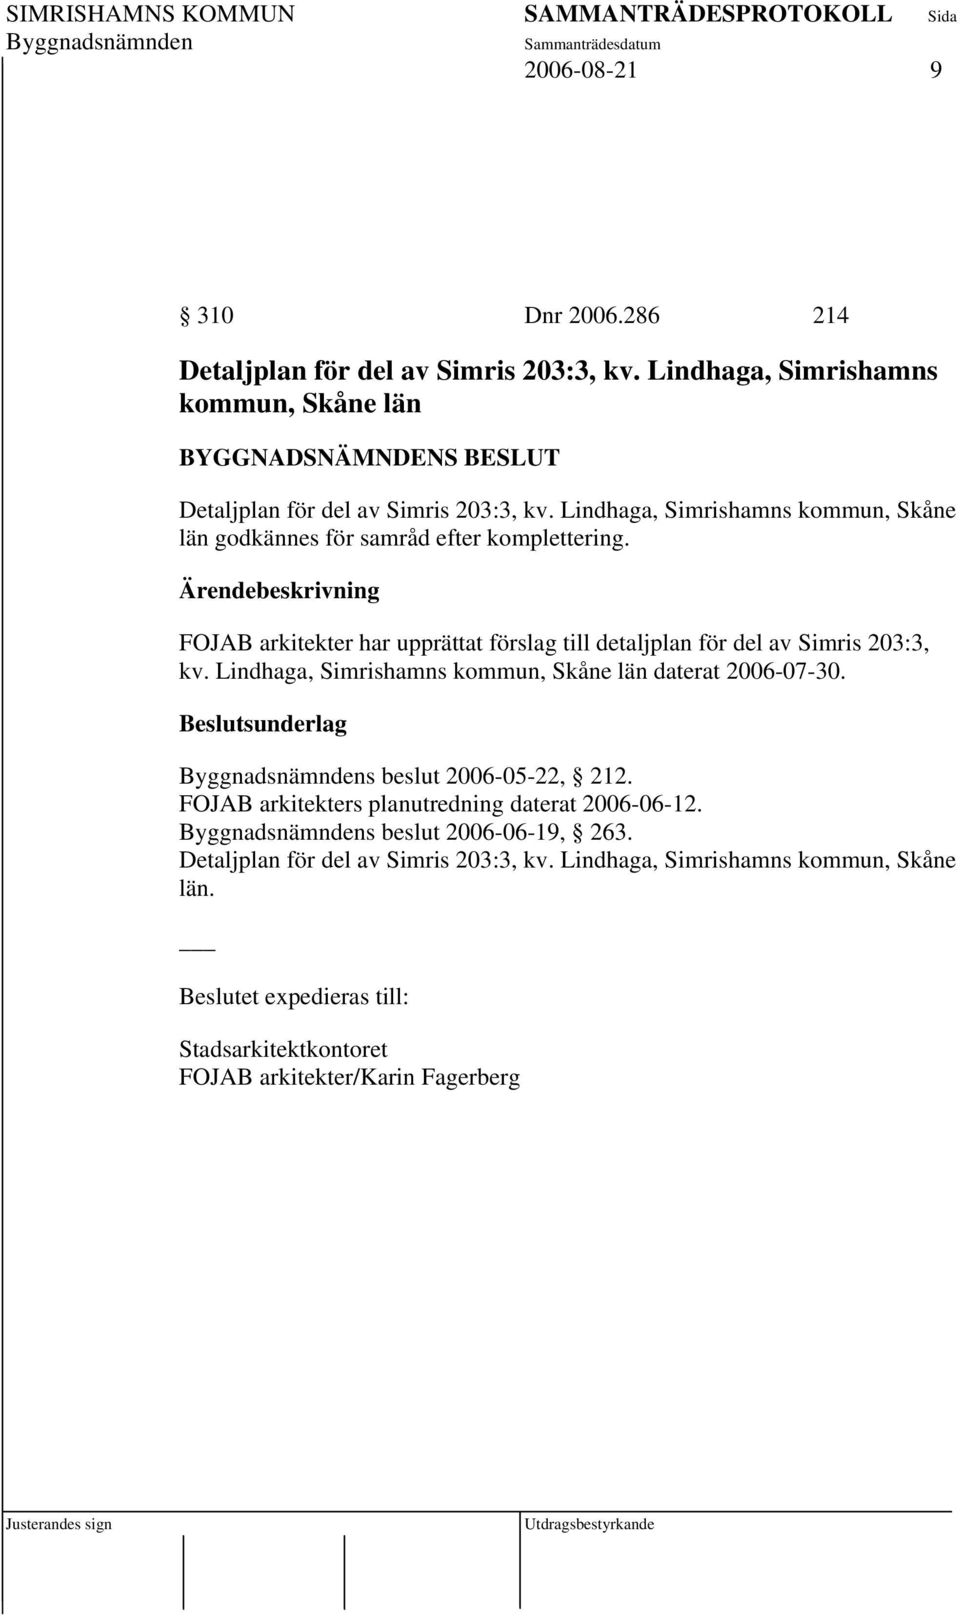 FOJAB arkitekter har upprättat förslag till detaljplan för del av Simris 203:3, kv. Lindhaga, Simrishamns kommun, Skåne län daterat 2006-07-30.